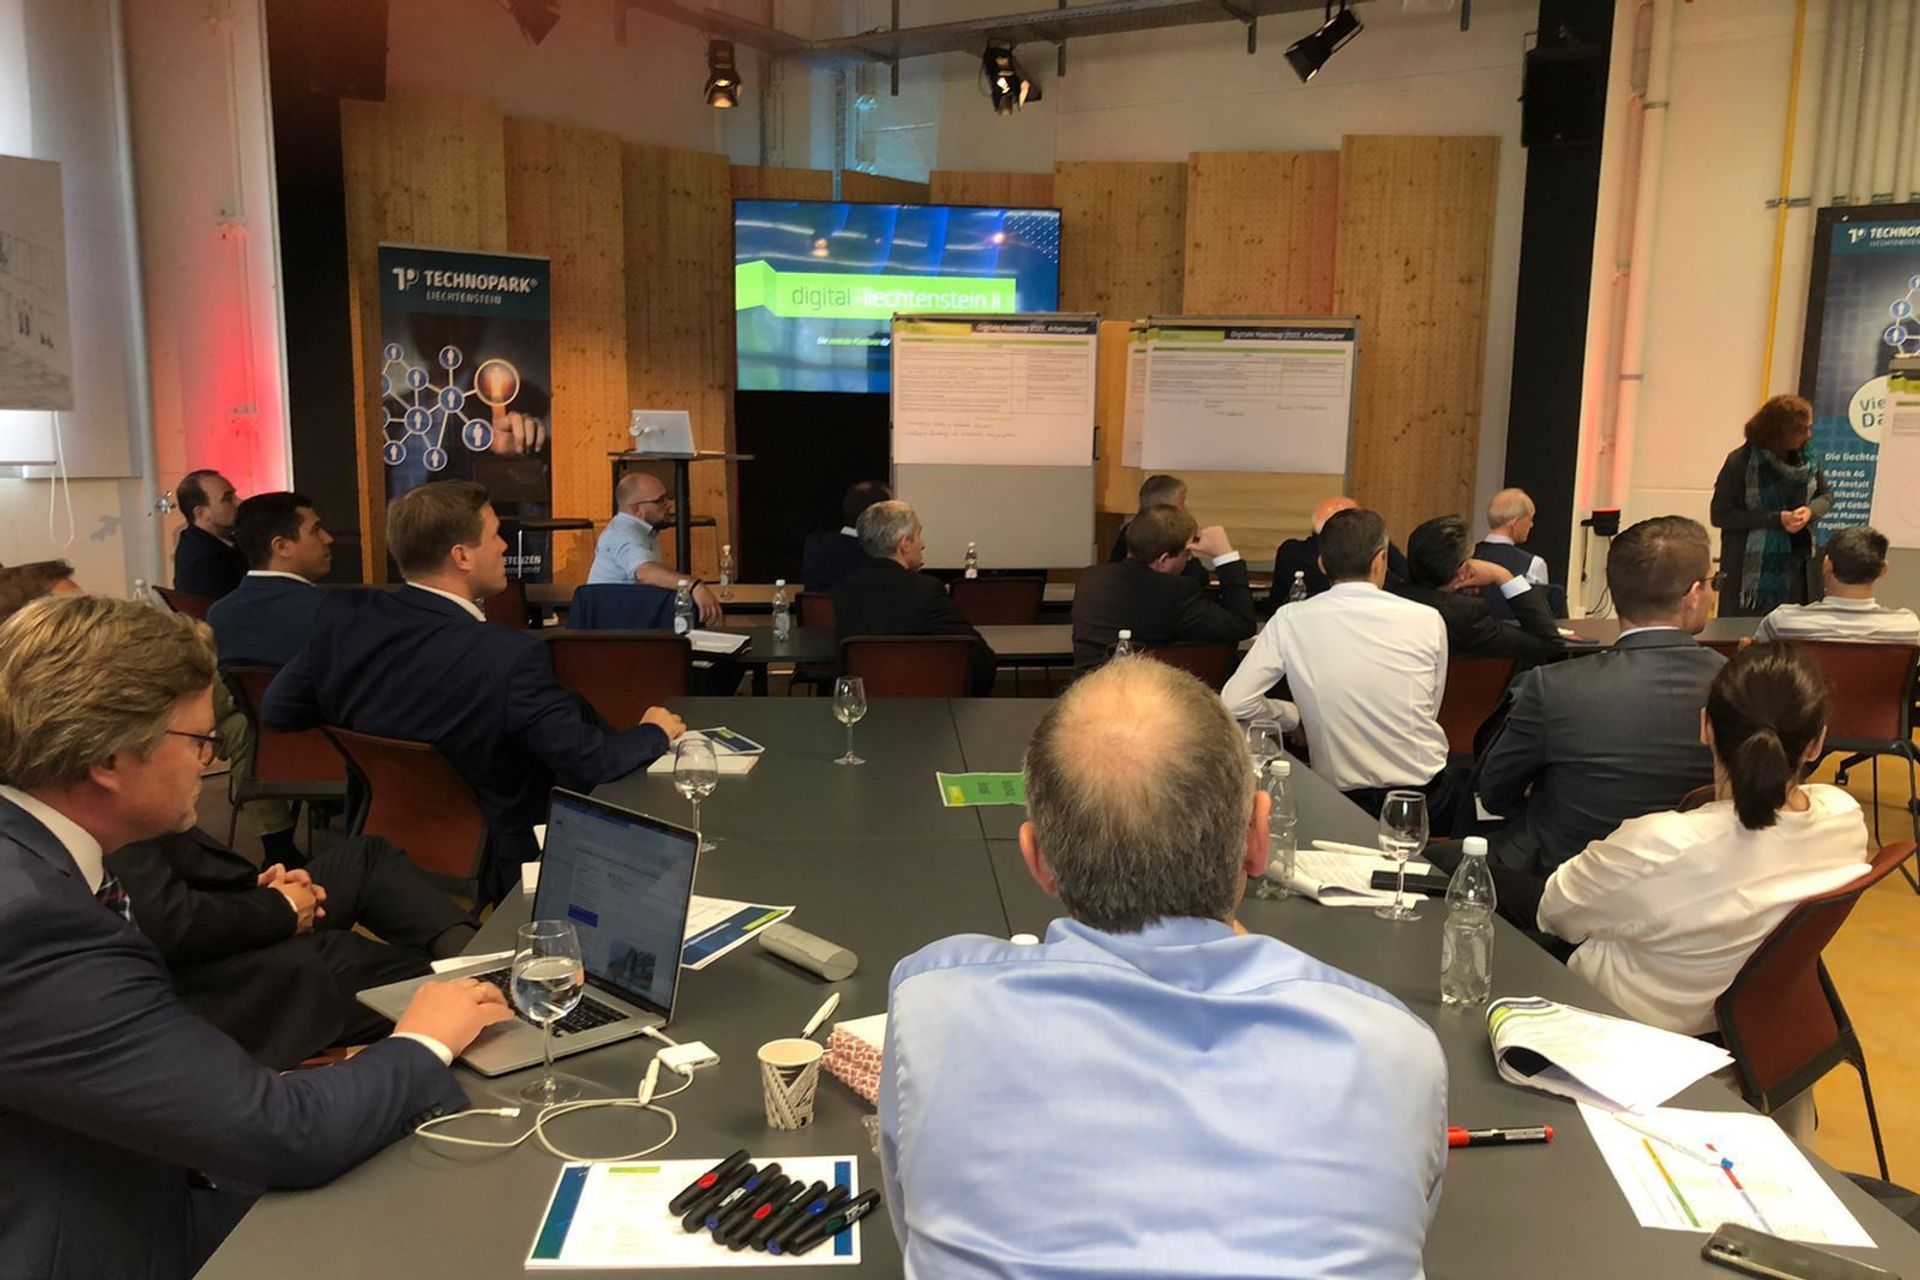 Hội thảo của ba mươi thành viên hội đồng quản trị của sáng kiến ​​digital-liechtenstein.li tại Technopark ở Vaduz, nhằm xem xét "Lộ trình kỹ thuật số" năm 2019